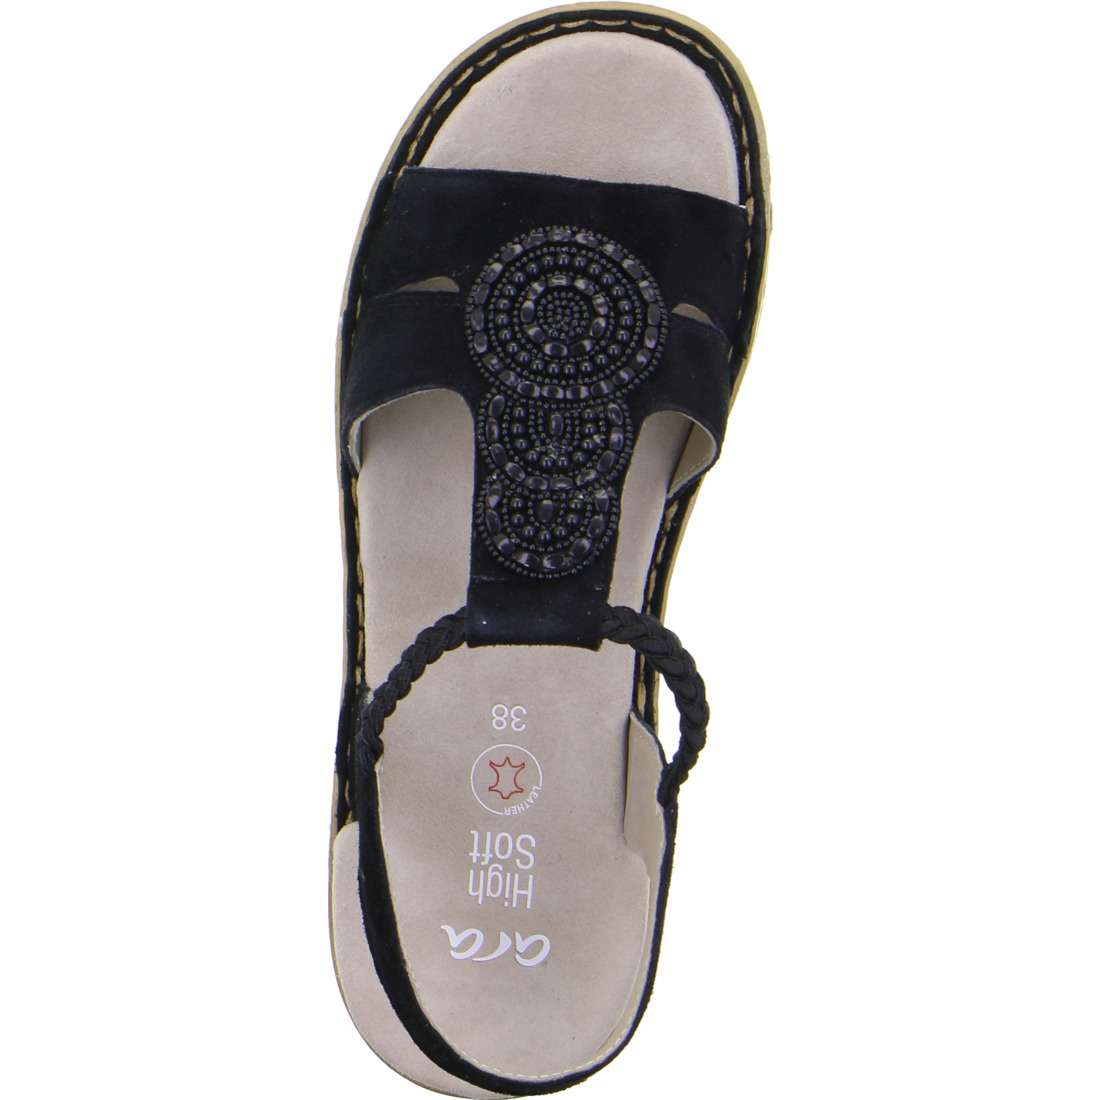 Ara 12-29008 01 Hawaii 2.0 Black G Wide Fit Slingback Sandals